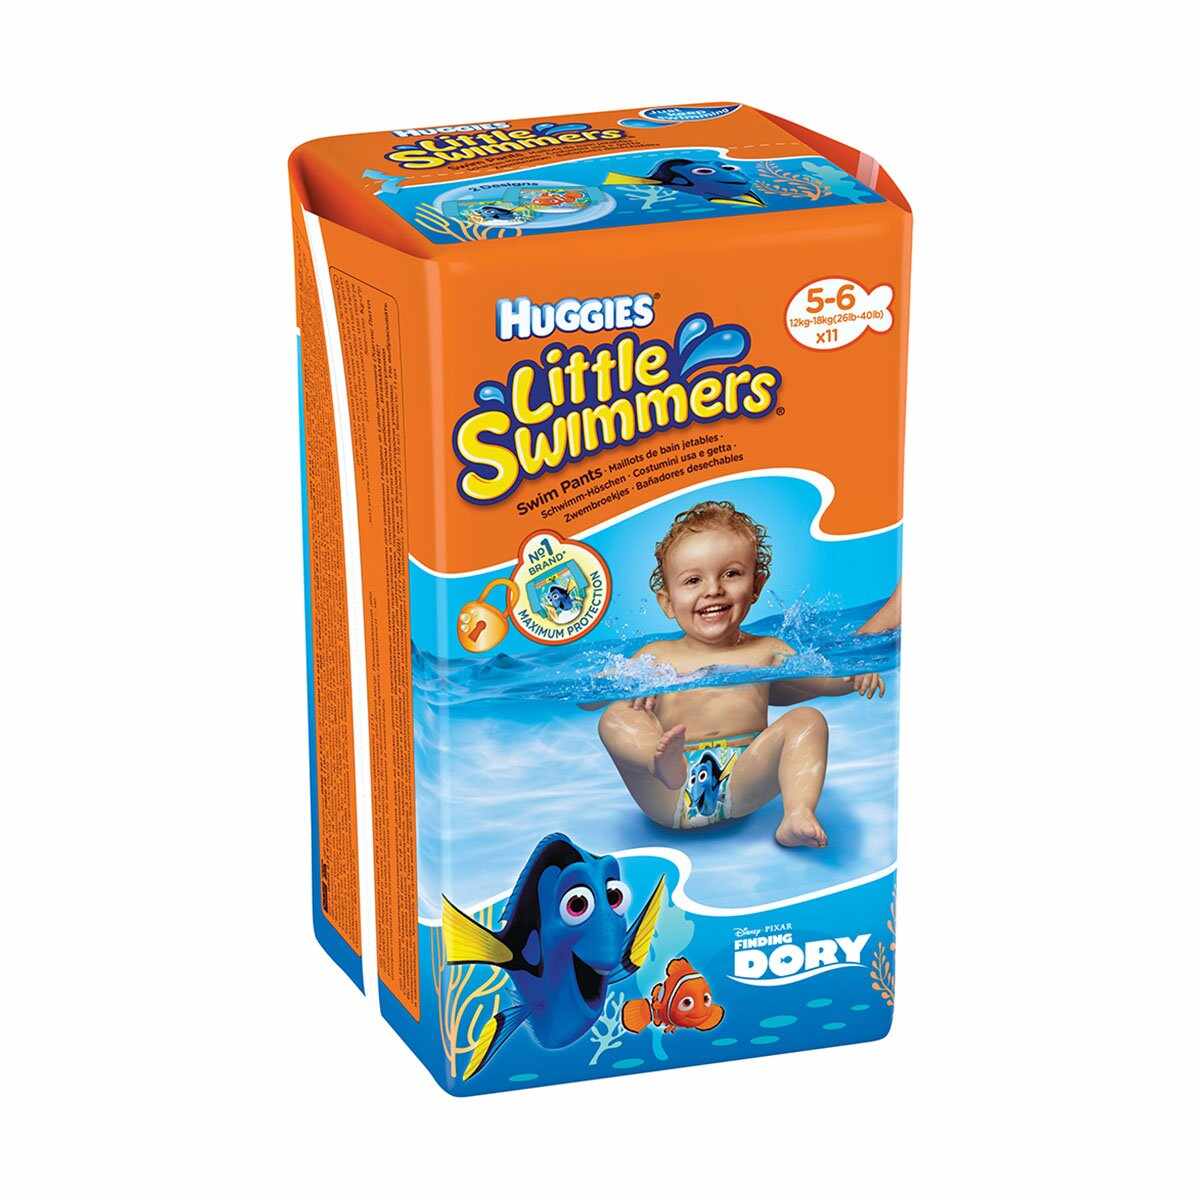 Scutece Huggies Little Swimmers, Nr 5-6, 12 - 18 Kg, 11 buc